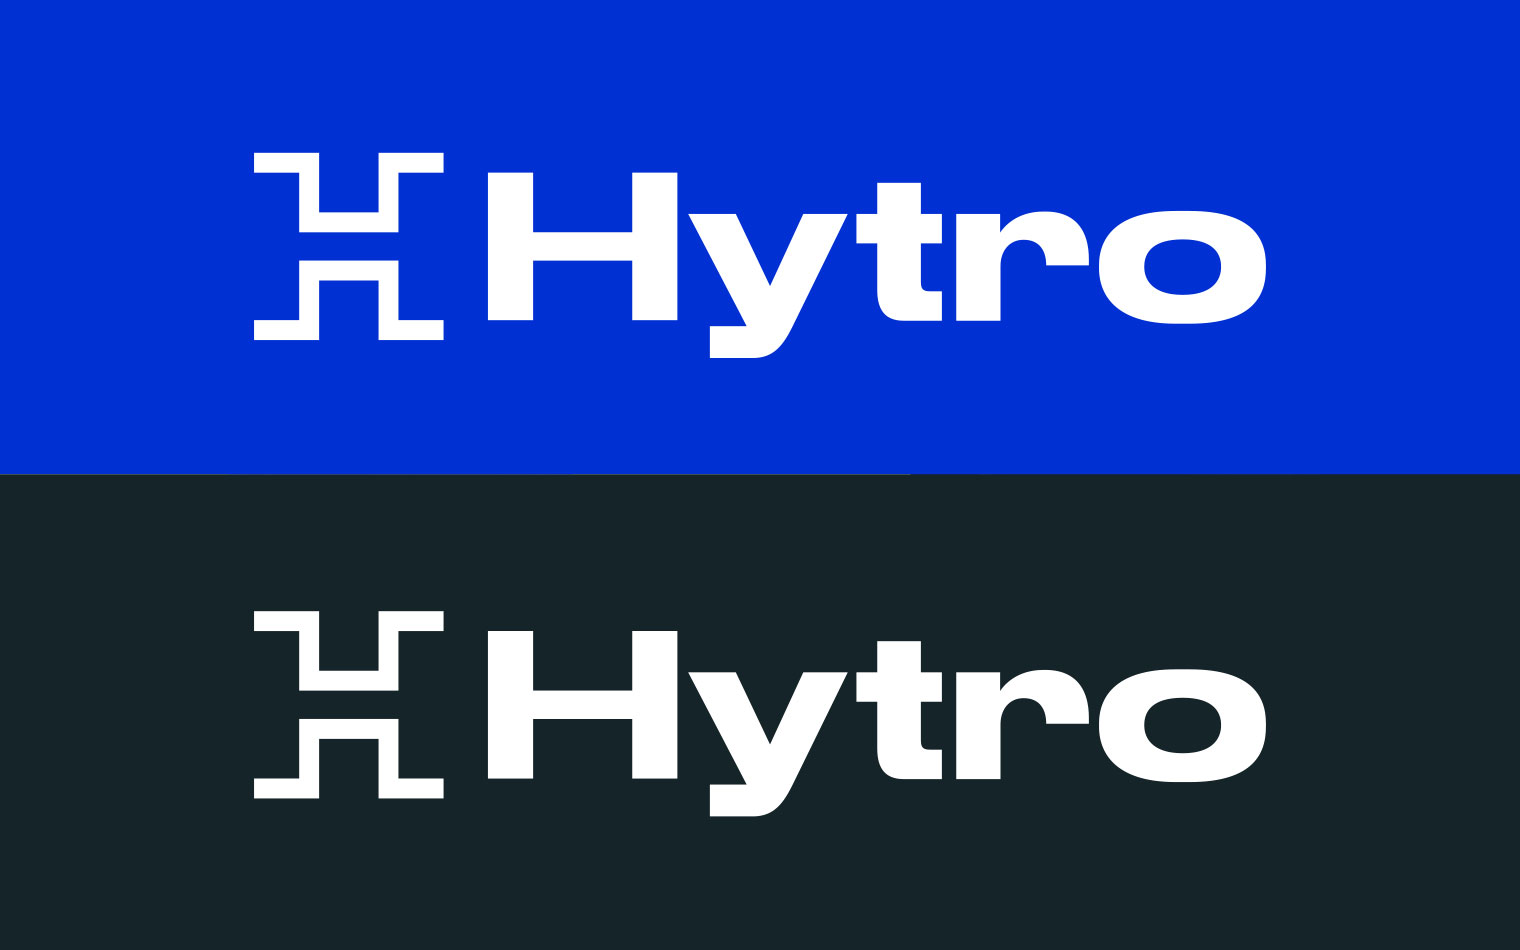 Hytro | Sportswear Branding